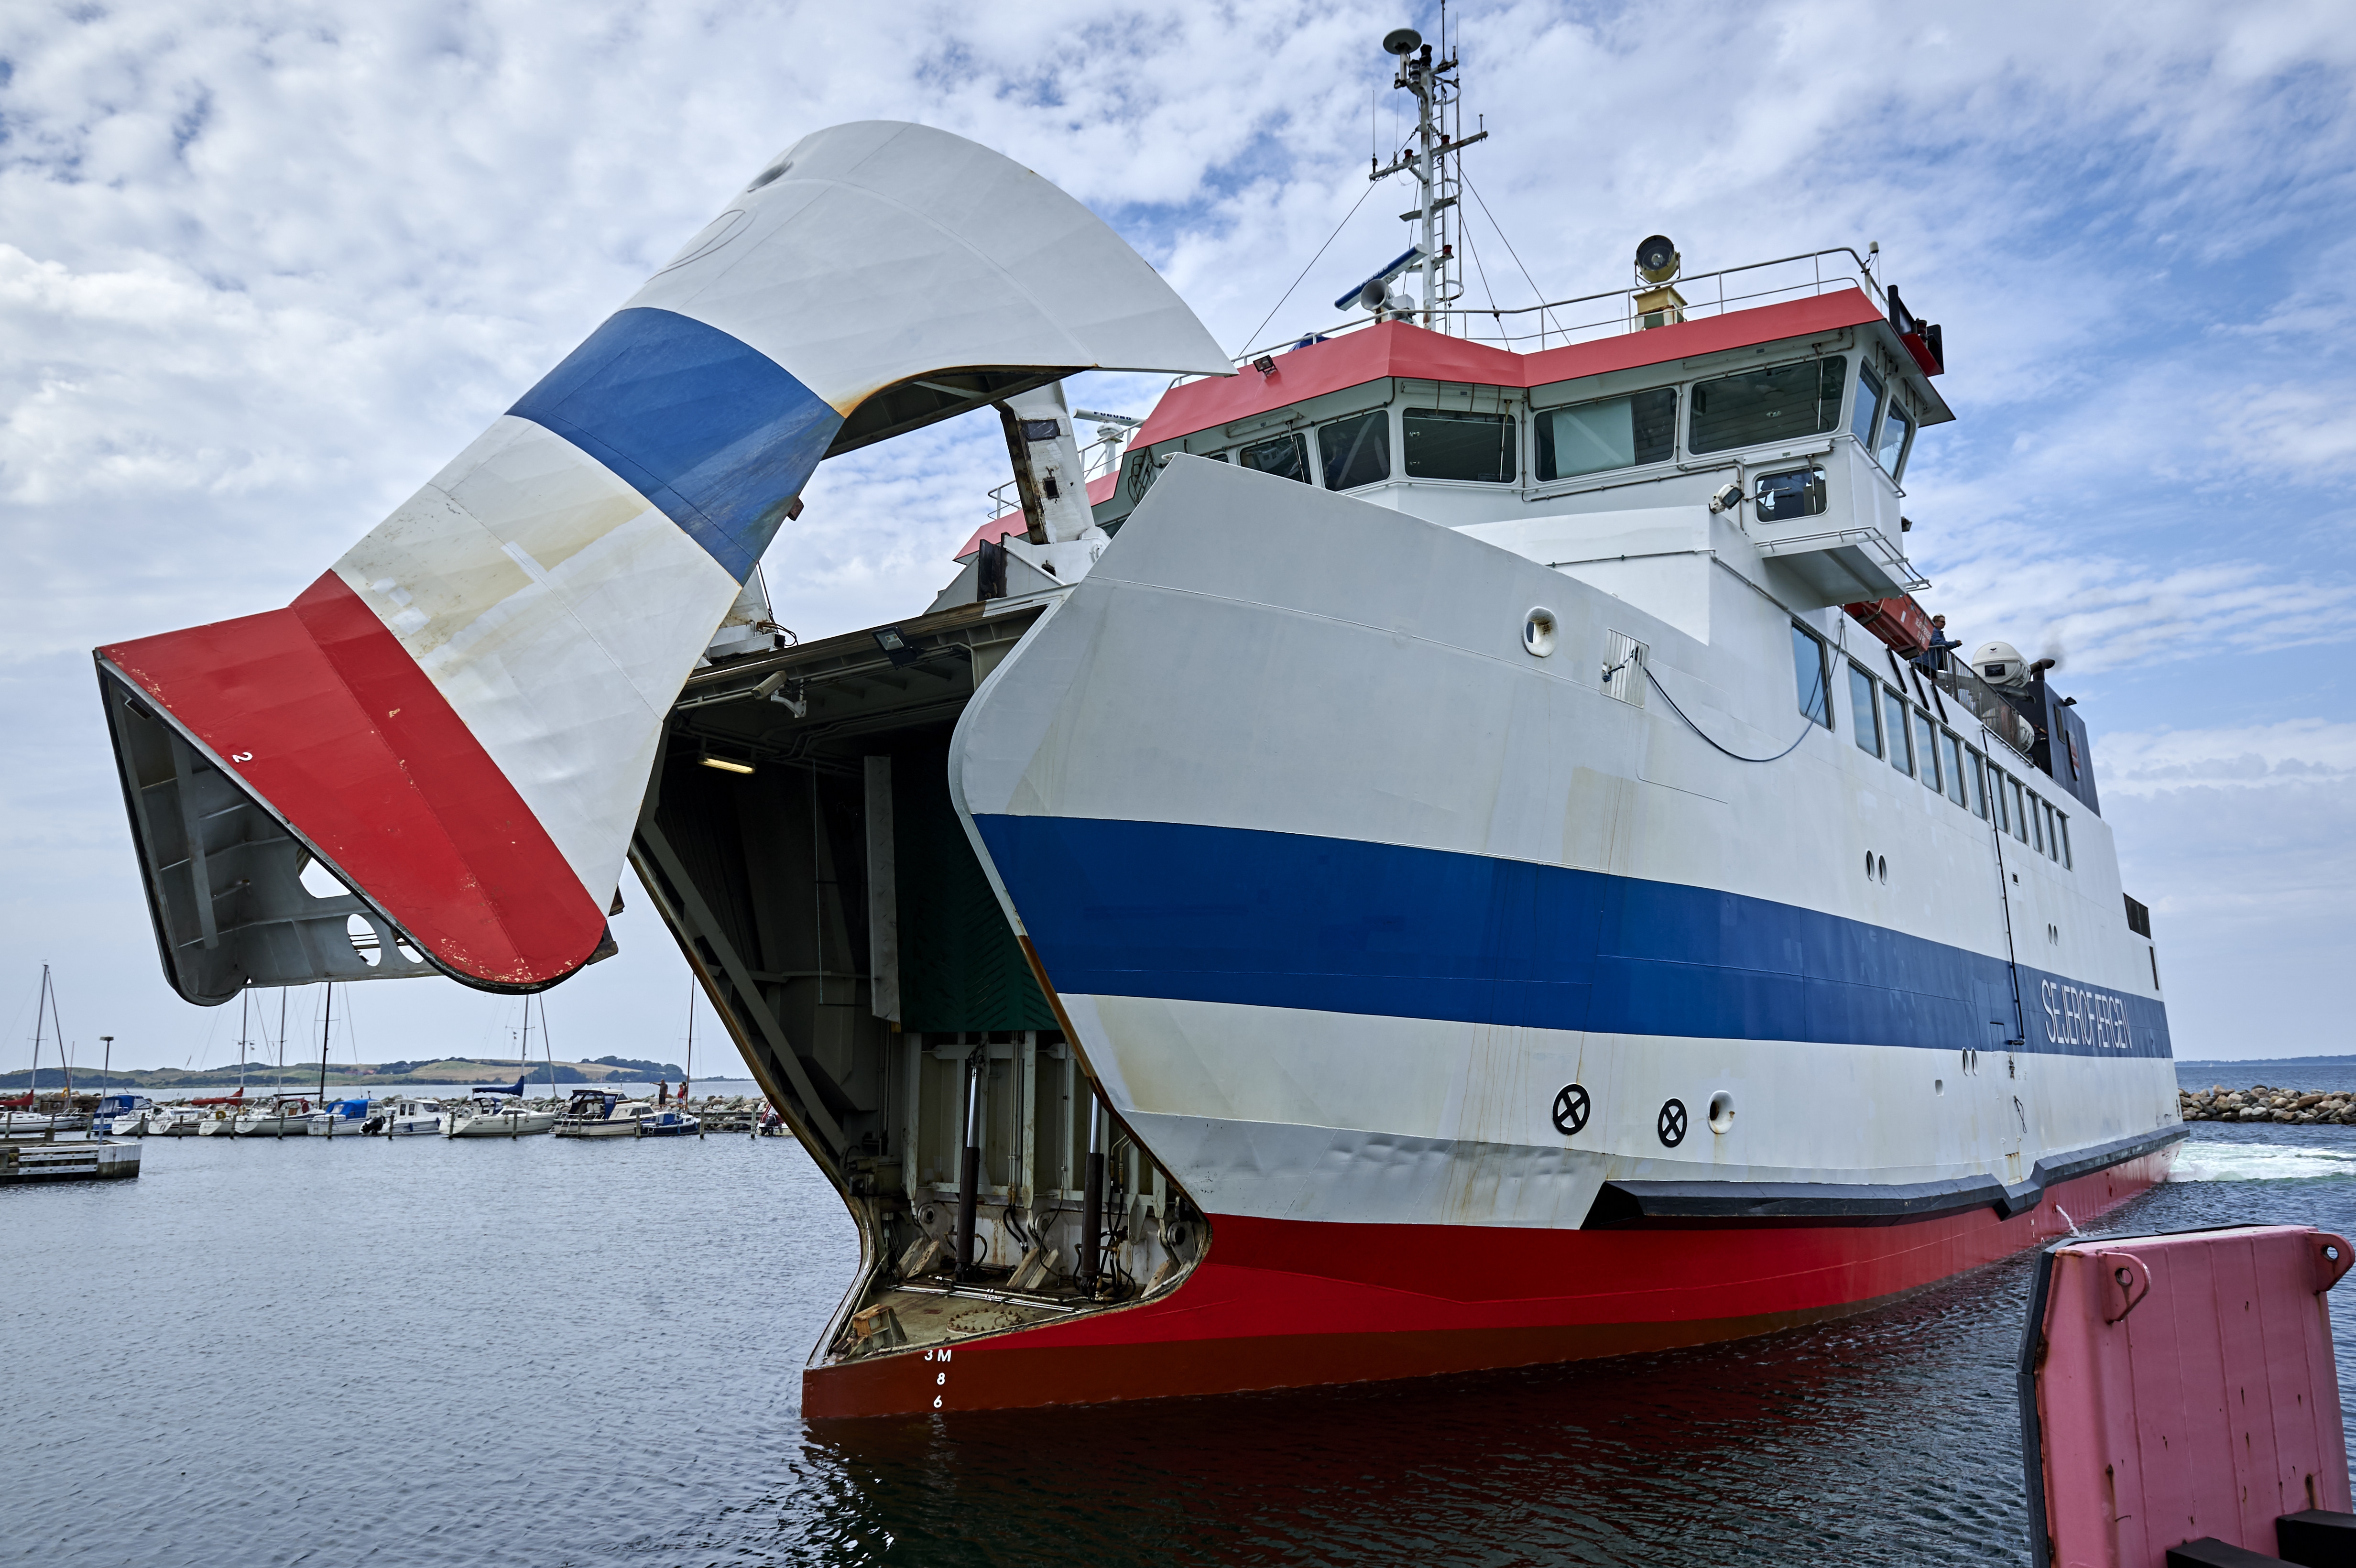 Sejerøfærgen - én af de danske færger som indsamler data